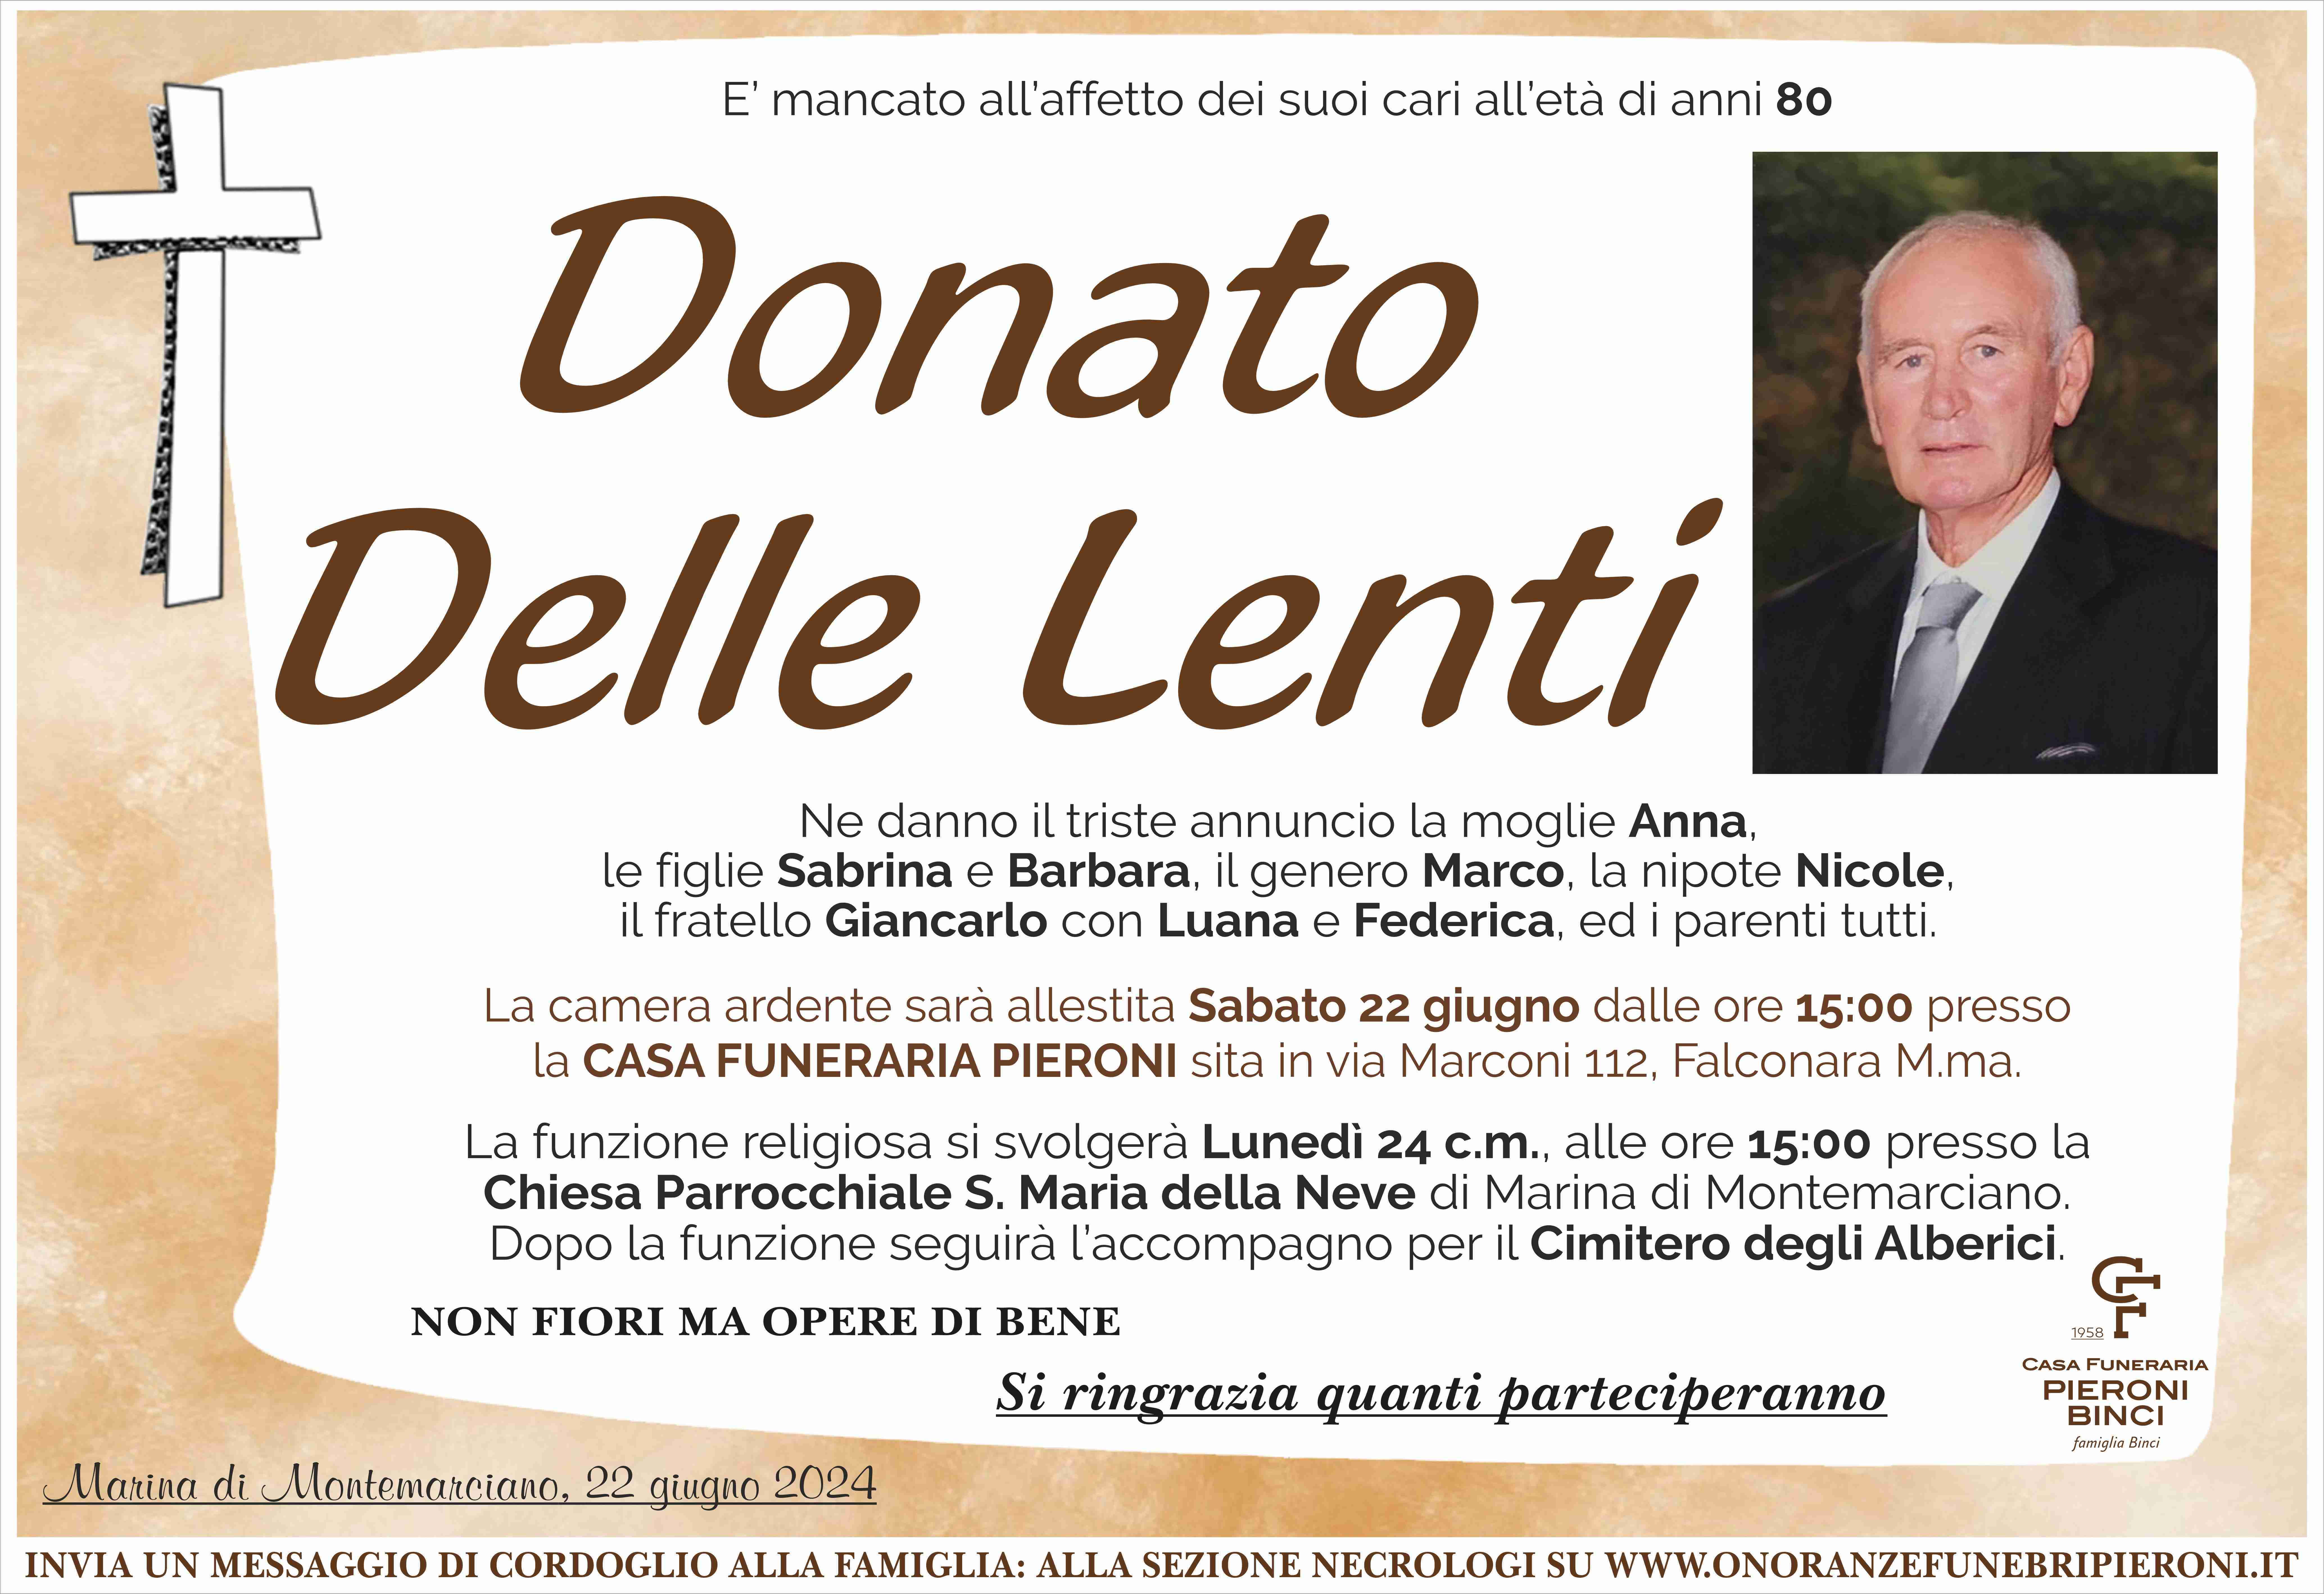 Donato Delle Lenti